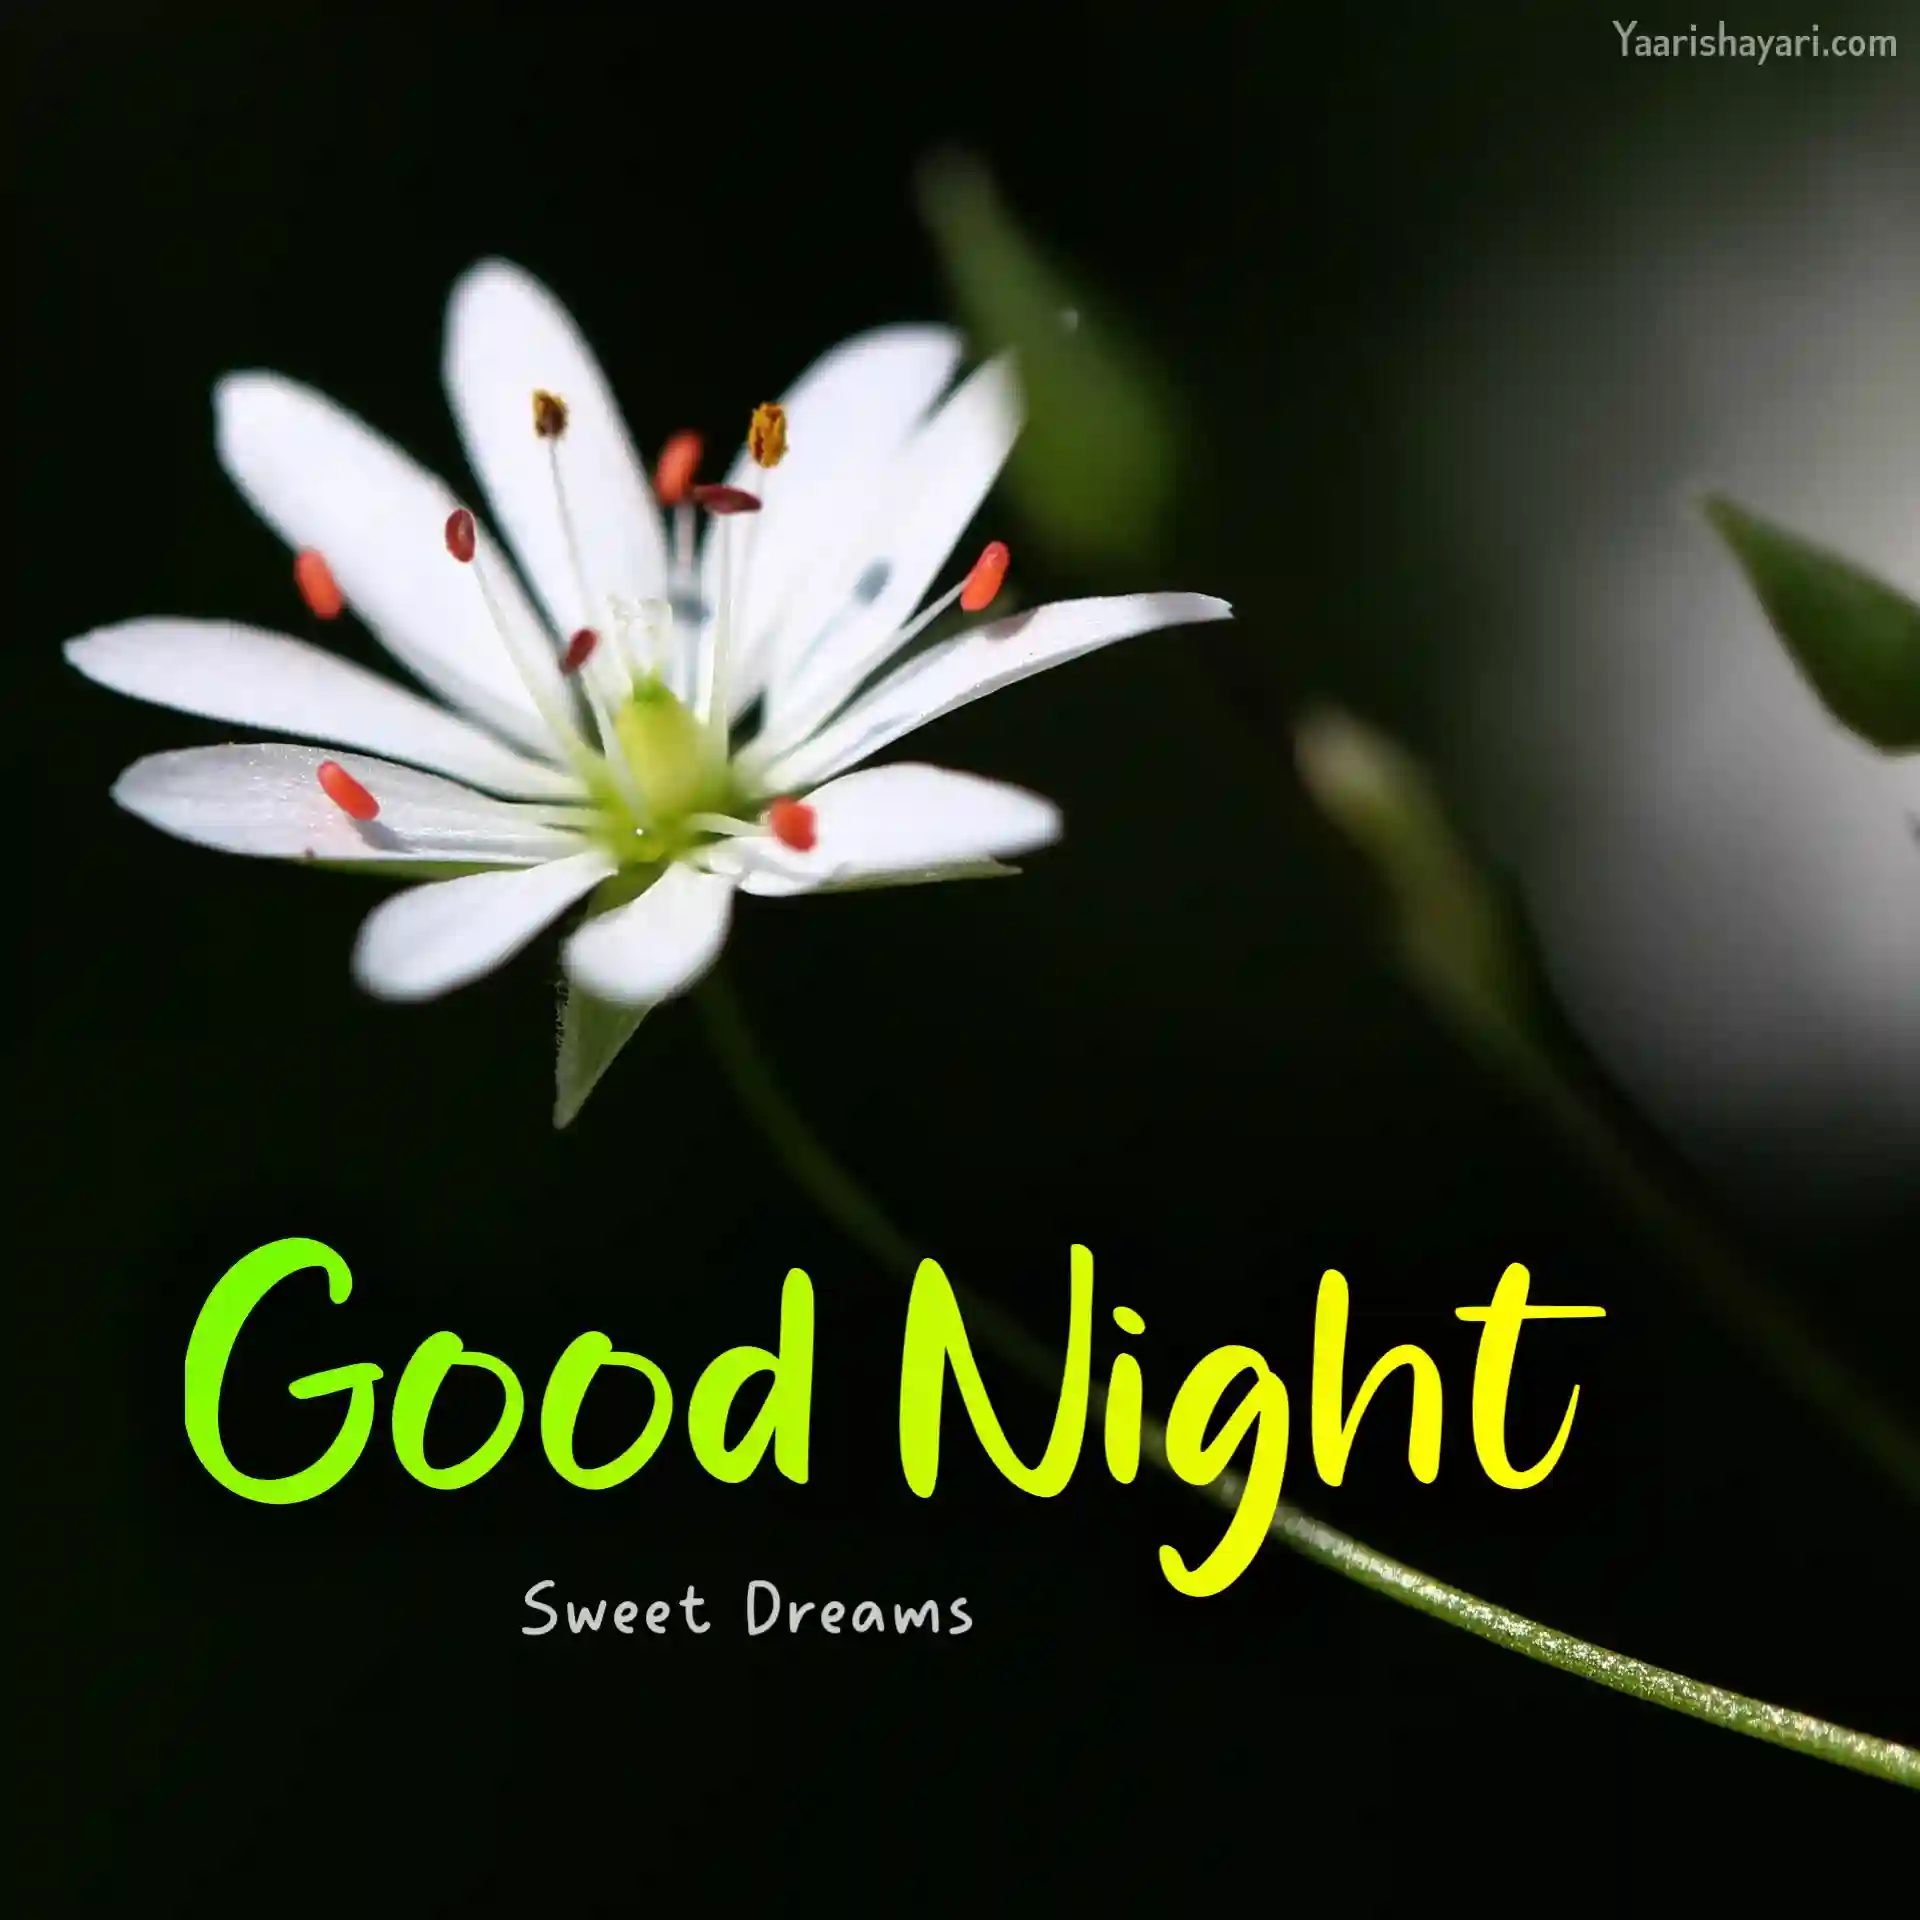 good night friends sweet dreams wallpaper